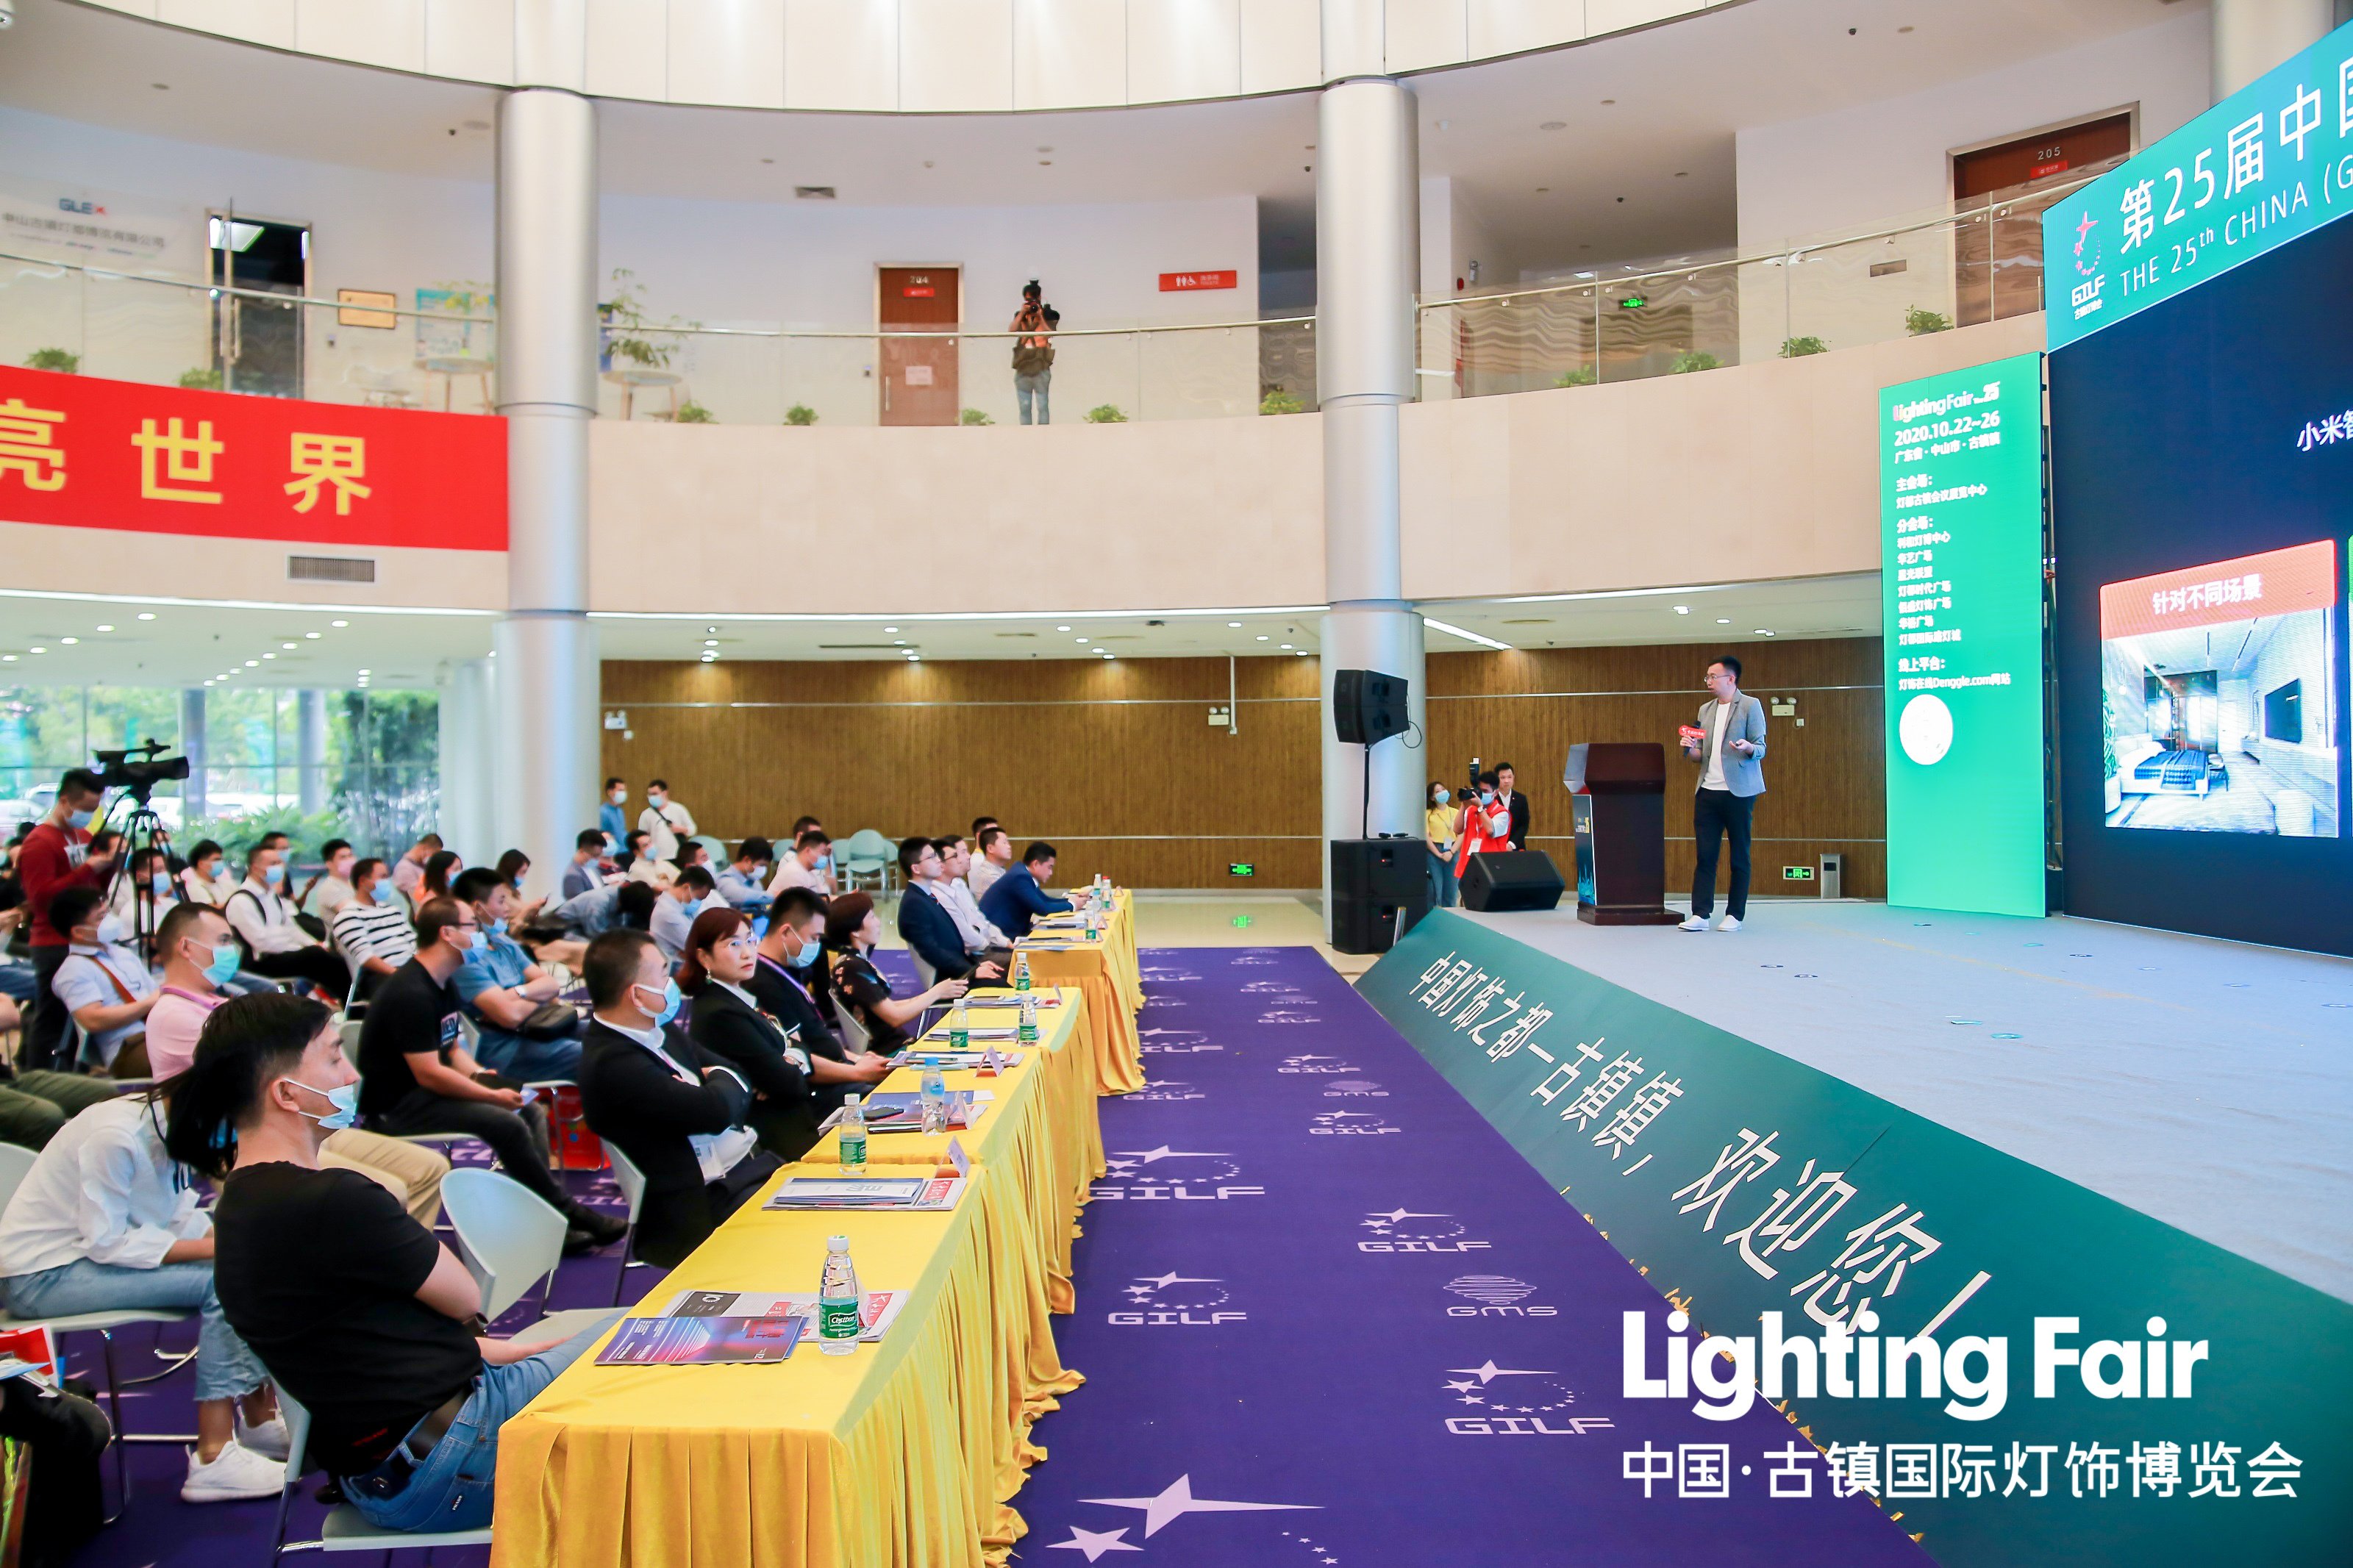 第26届古镇灯博会展期活动 | Deng.com灯网灯饰照明数字化发展论坛